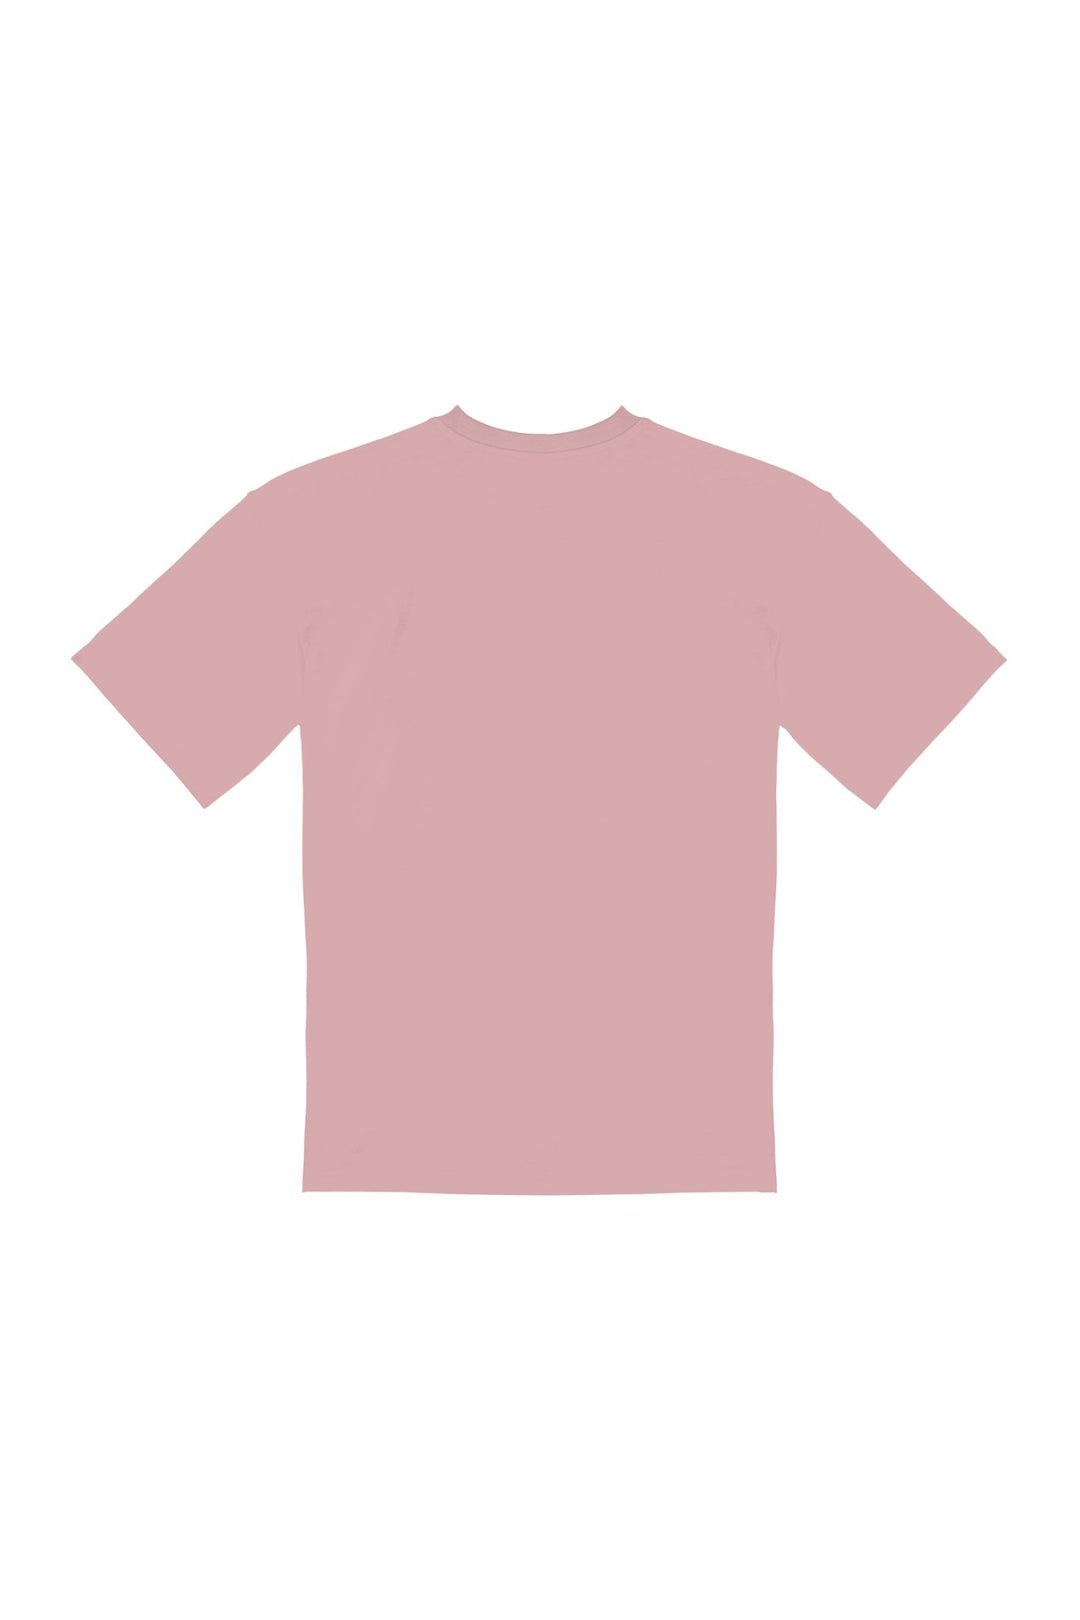 JEUX DE MAIN・T - shirt unisexe・Rose - Le Cartel